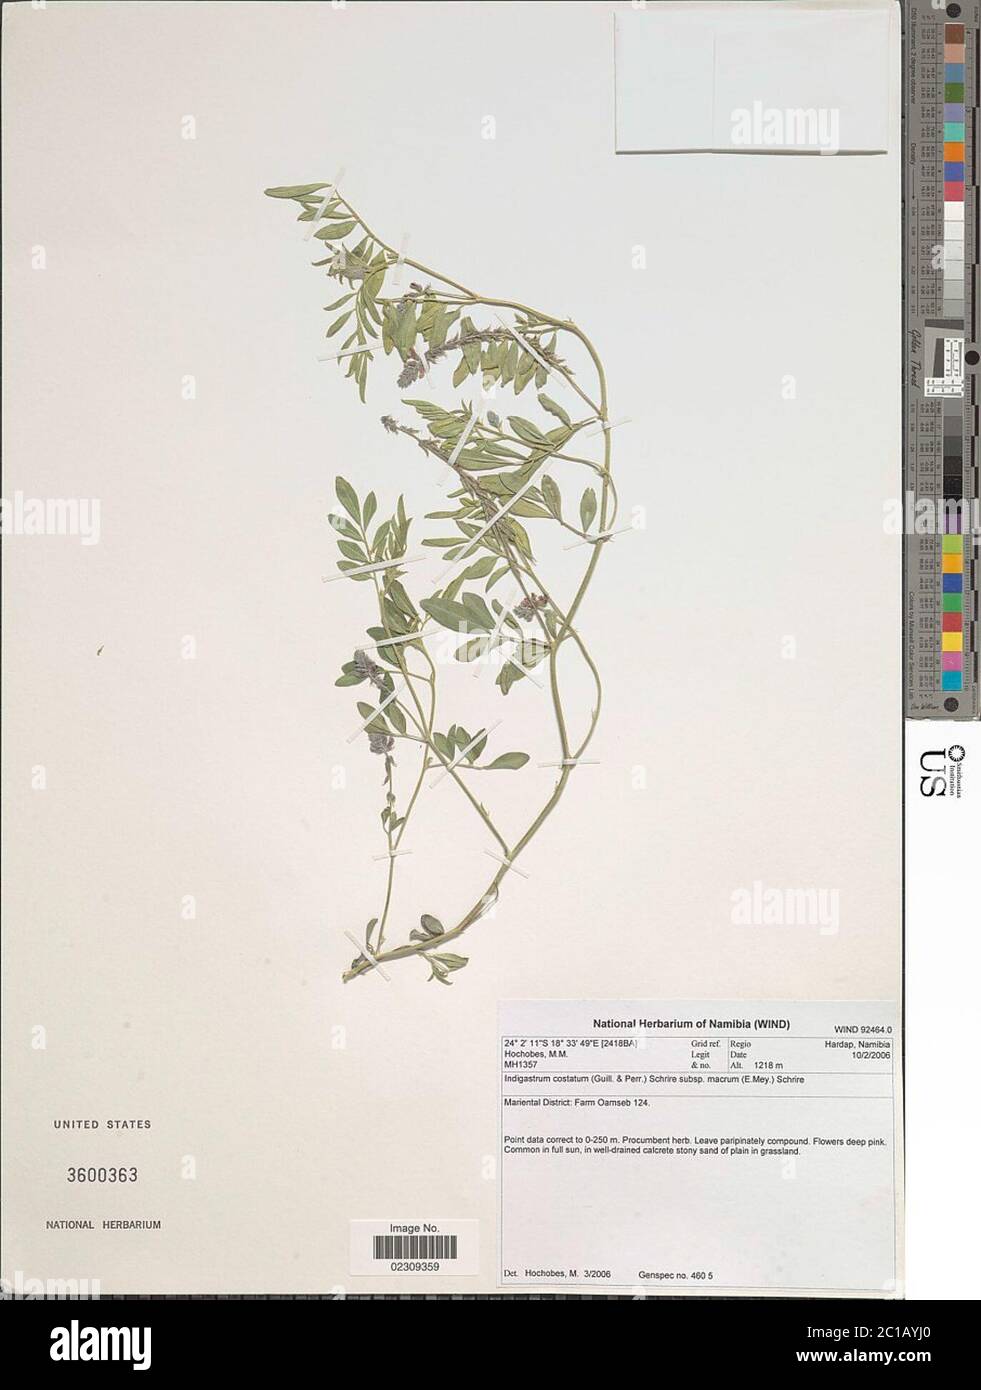 Indigastrum costatum subsp macrum E Mey Schrire Indigastrum costatum subsp macrum E Mey Schrire. Stock Photo